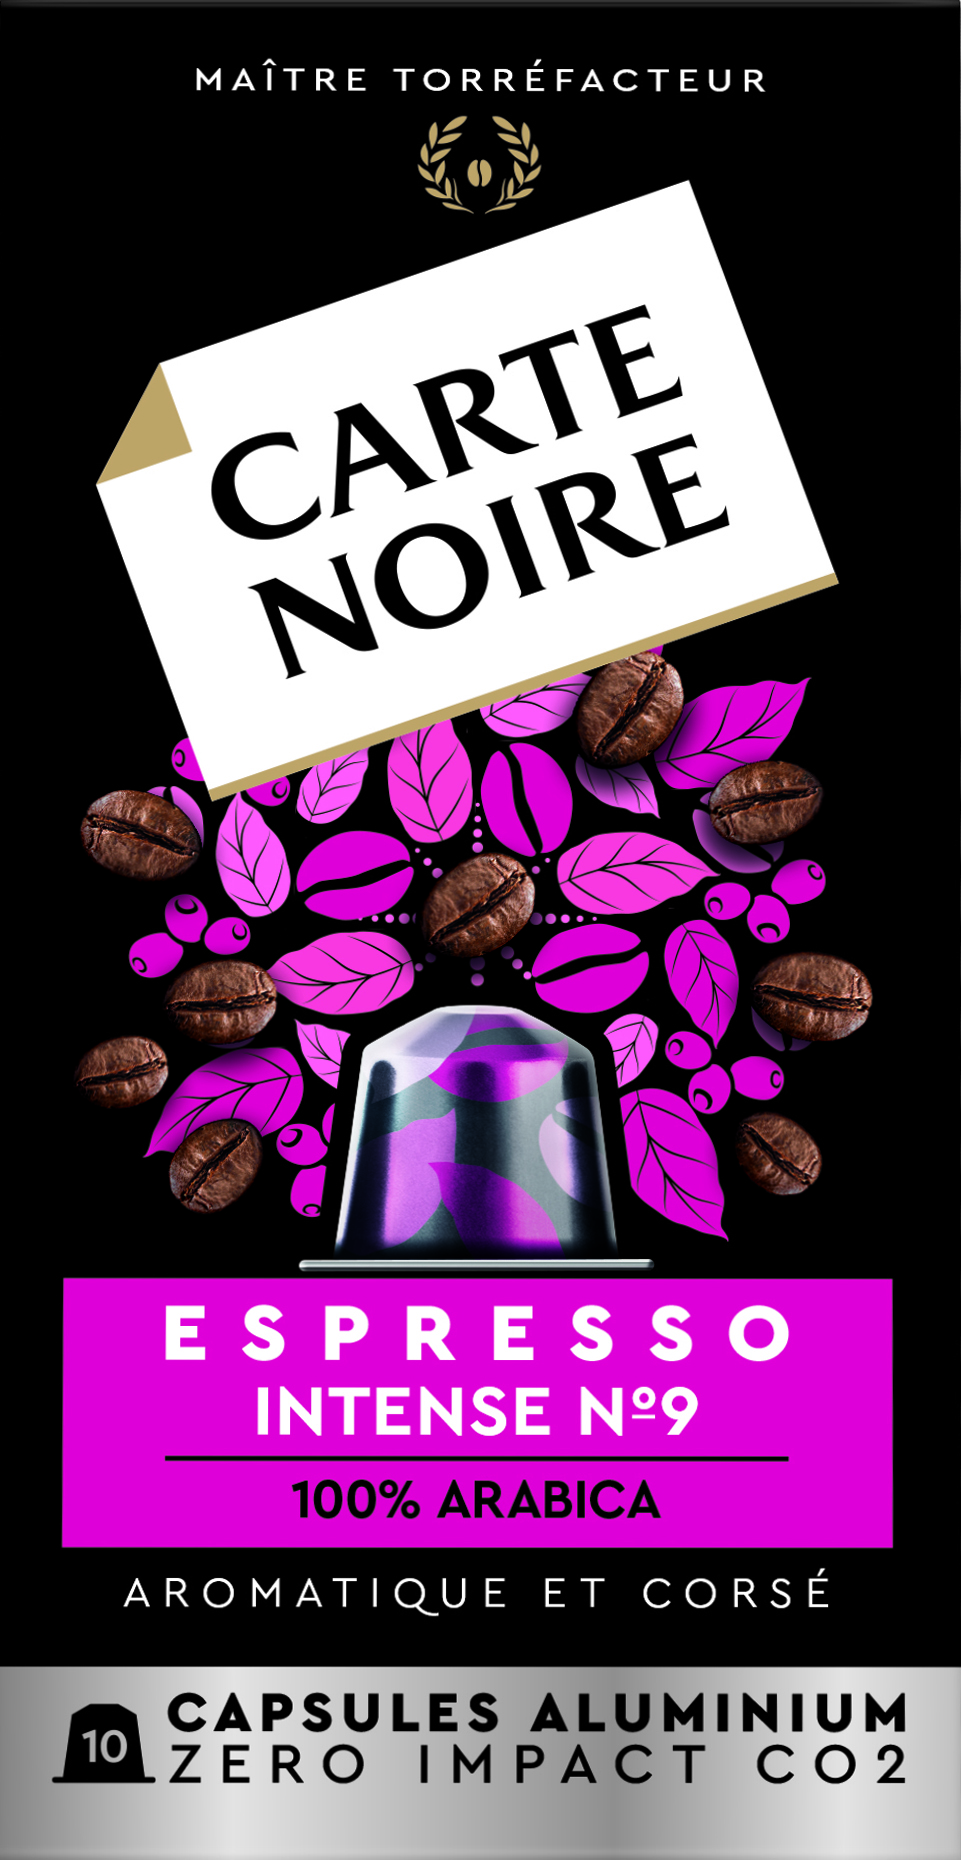 Capsule di caffè espresso intenso compatibili Nespresso; x10; 55 g - CARTE NOIRE